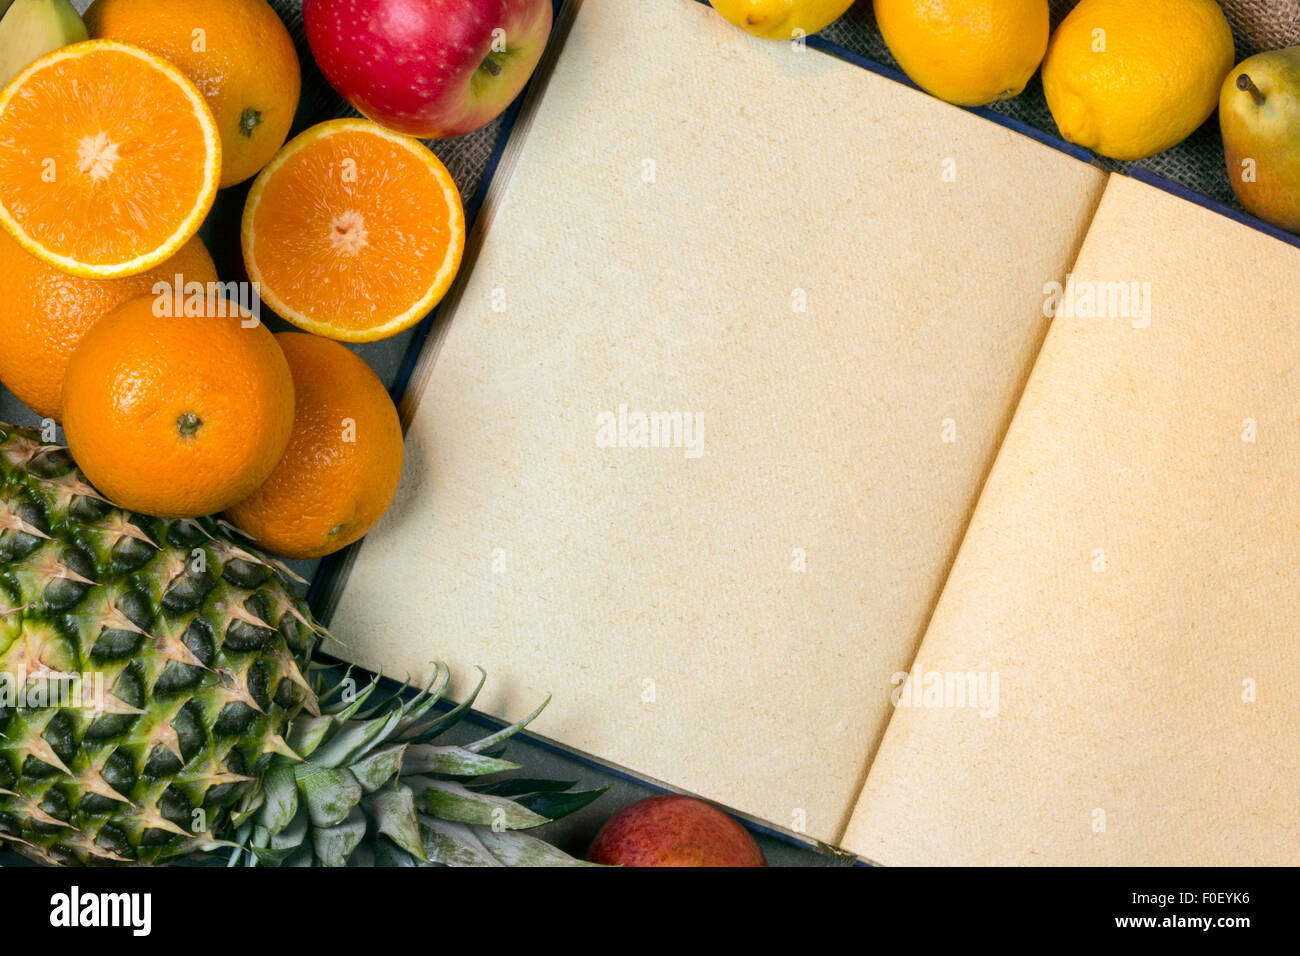 Ein Menü öffnen Buch mit leeren Seiten und eine Auswahl an frischem Obst. Stockfoto